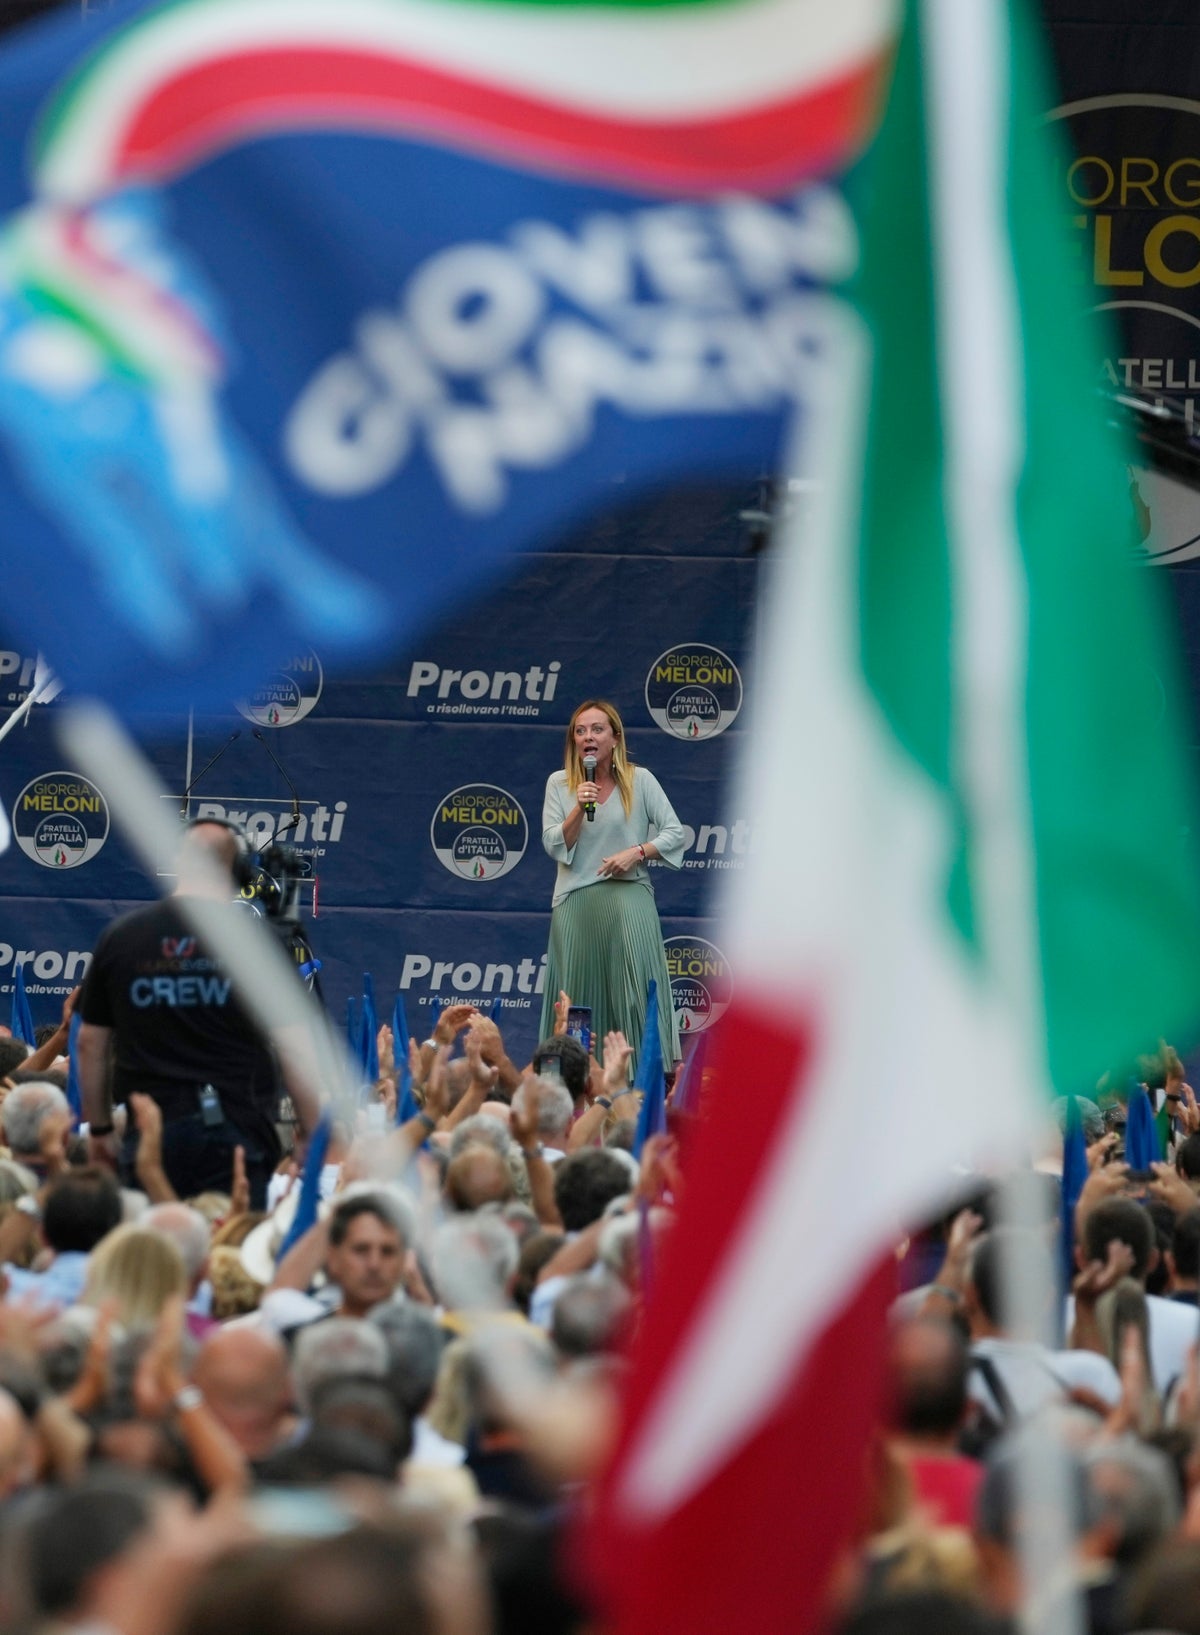 Meloni de Italia critica la política energética mientras la campaña se intensifica